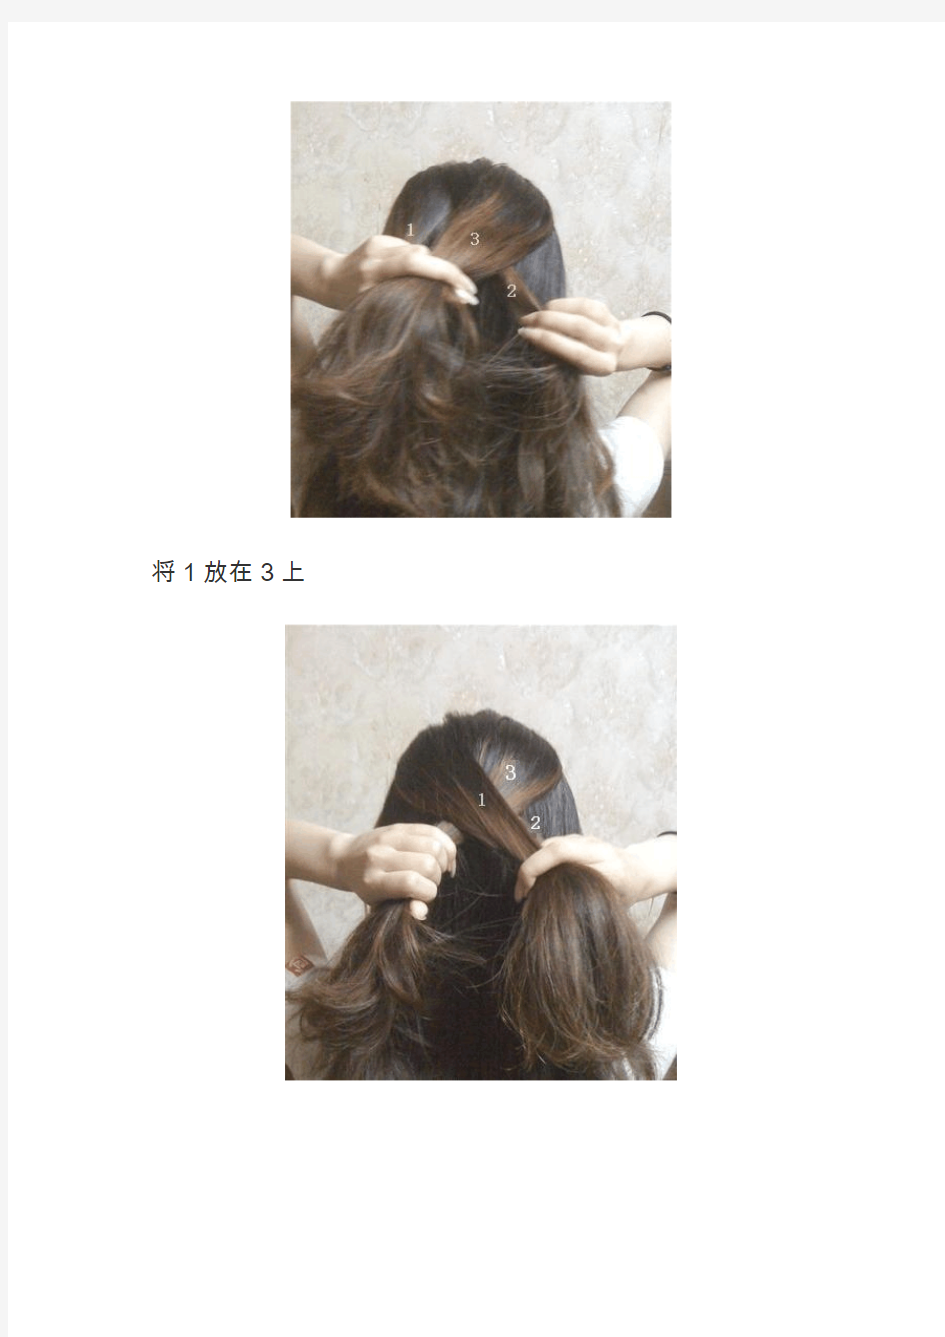 女生扎头发方法图解教程